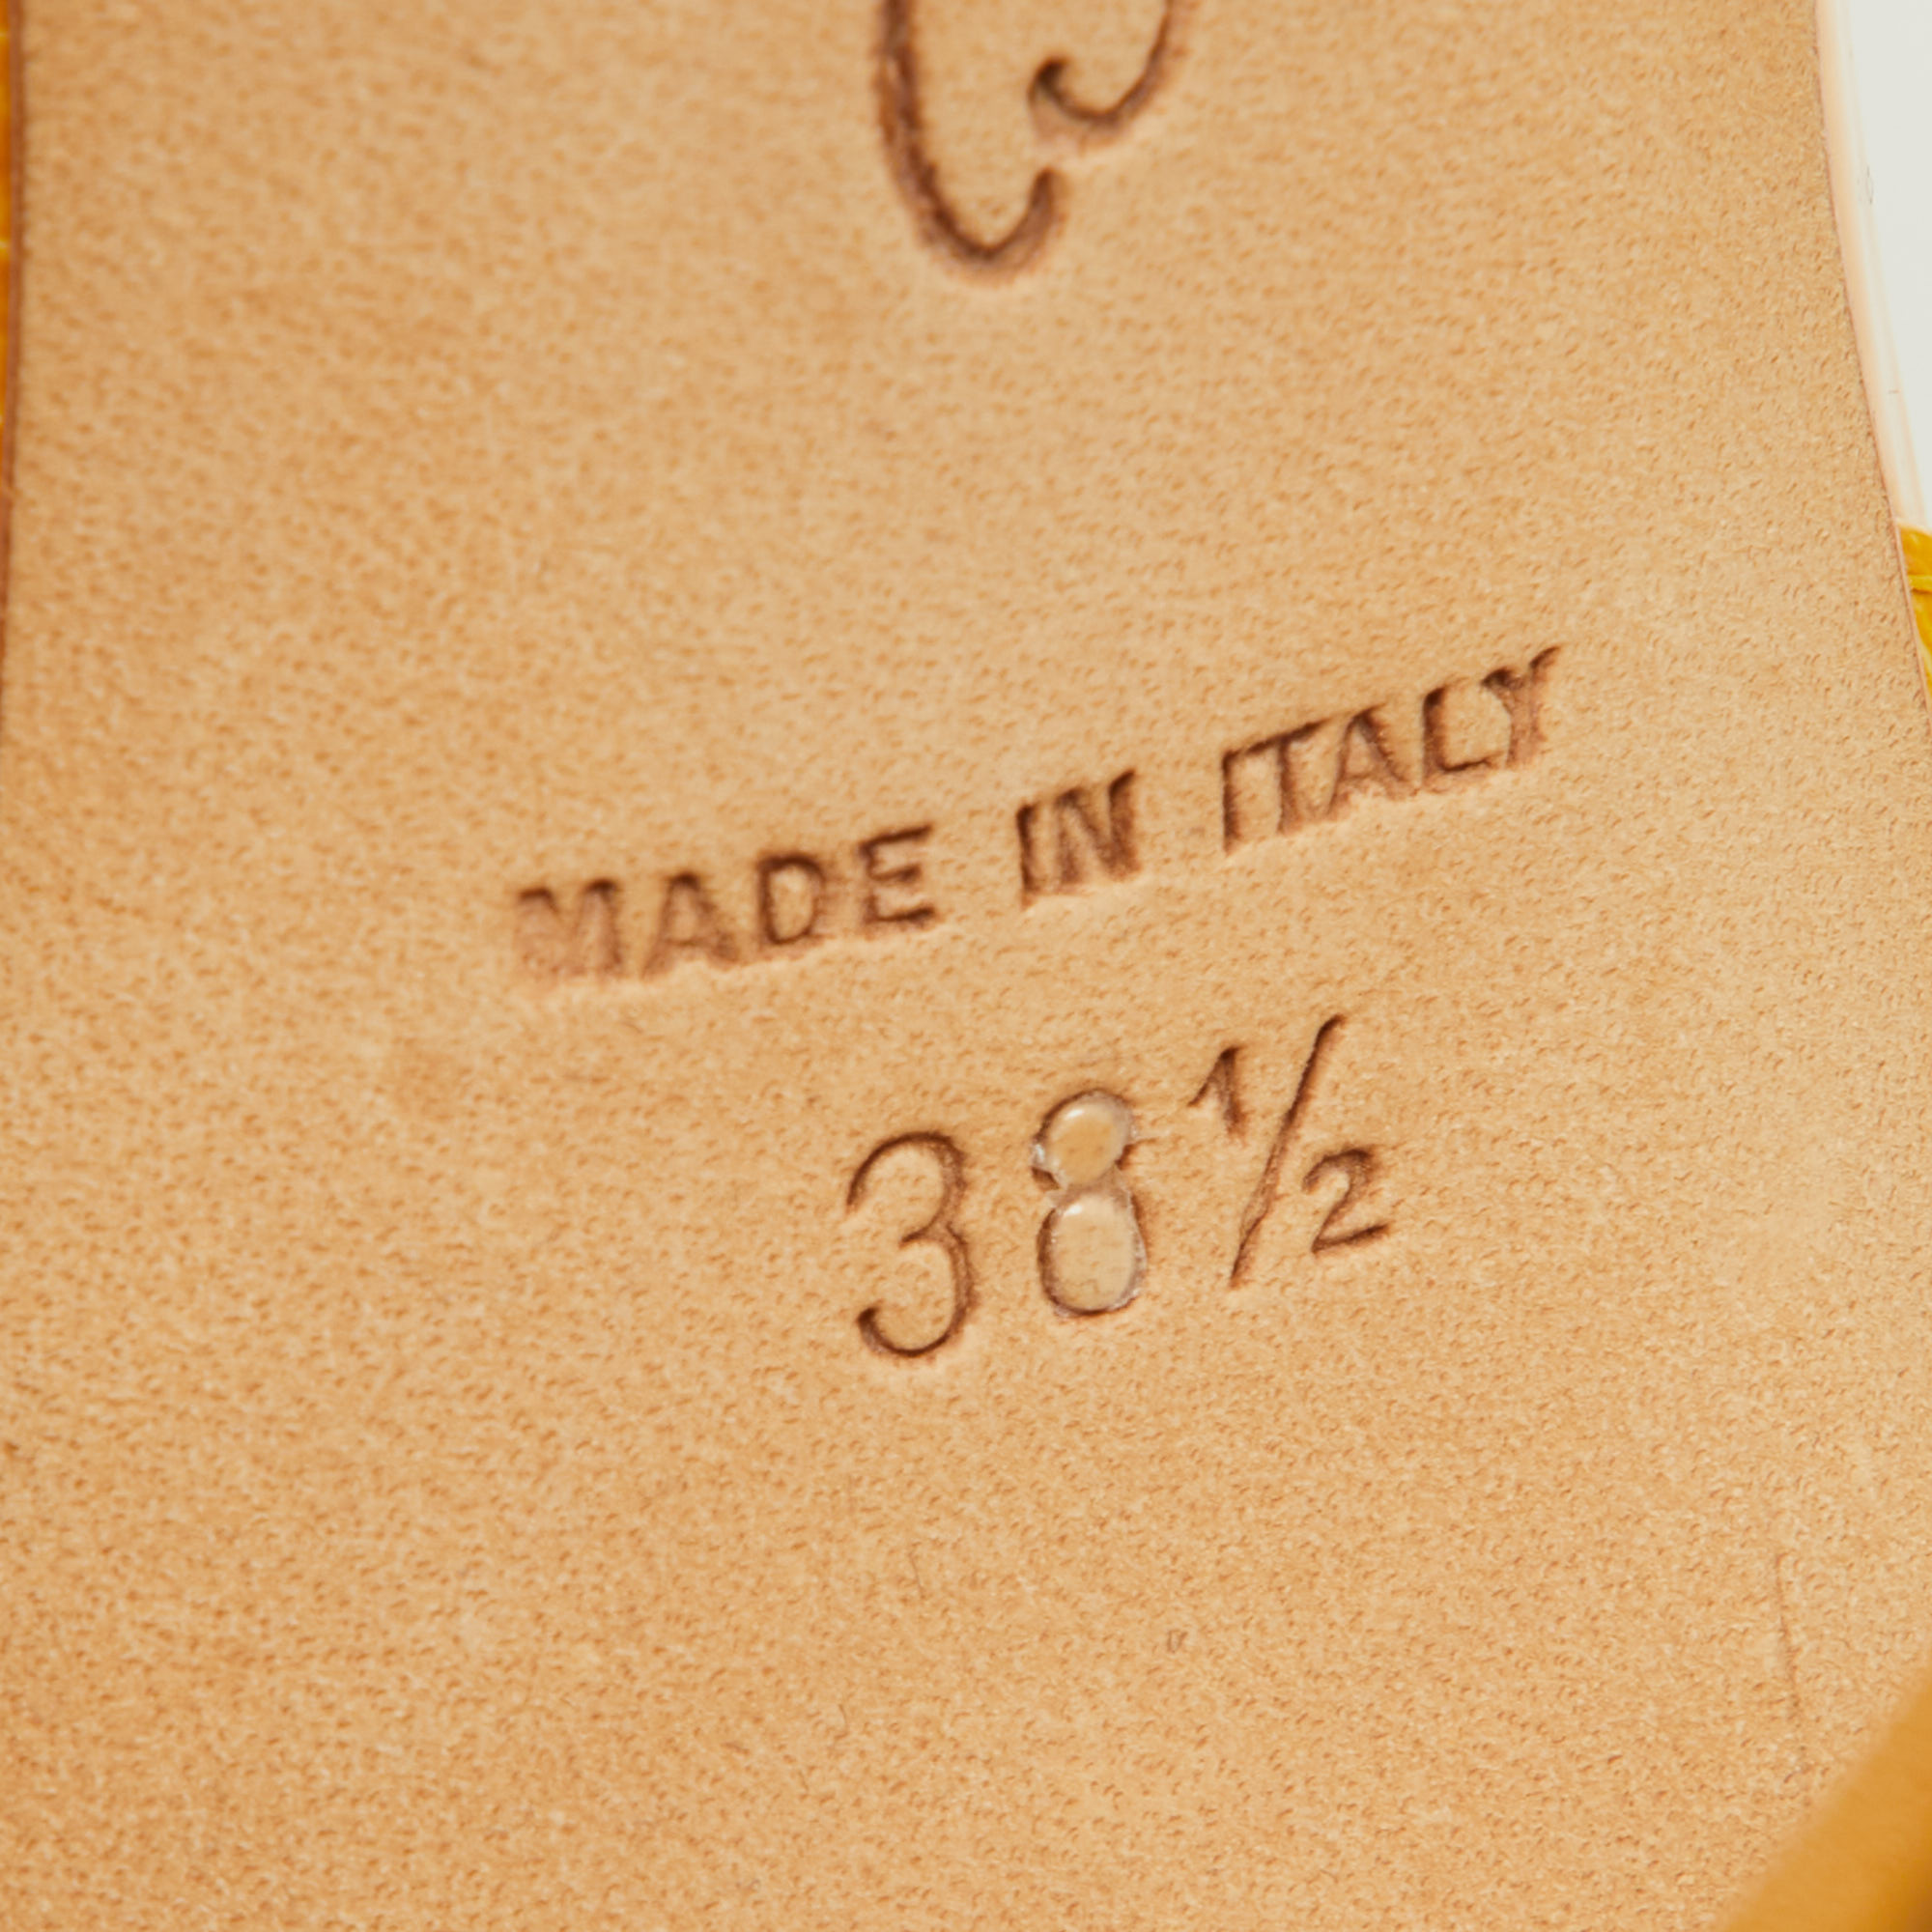 Oscar De La Renta Yellow Patent Leather Sandals Size 38.5